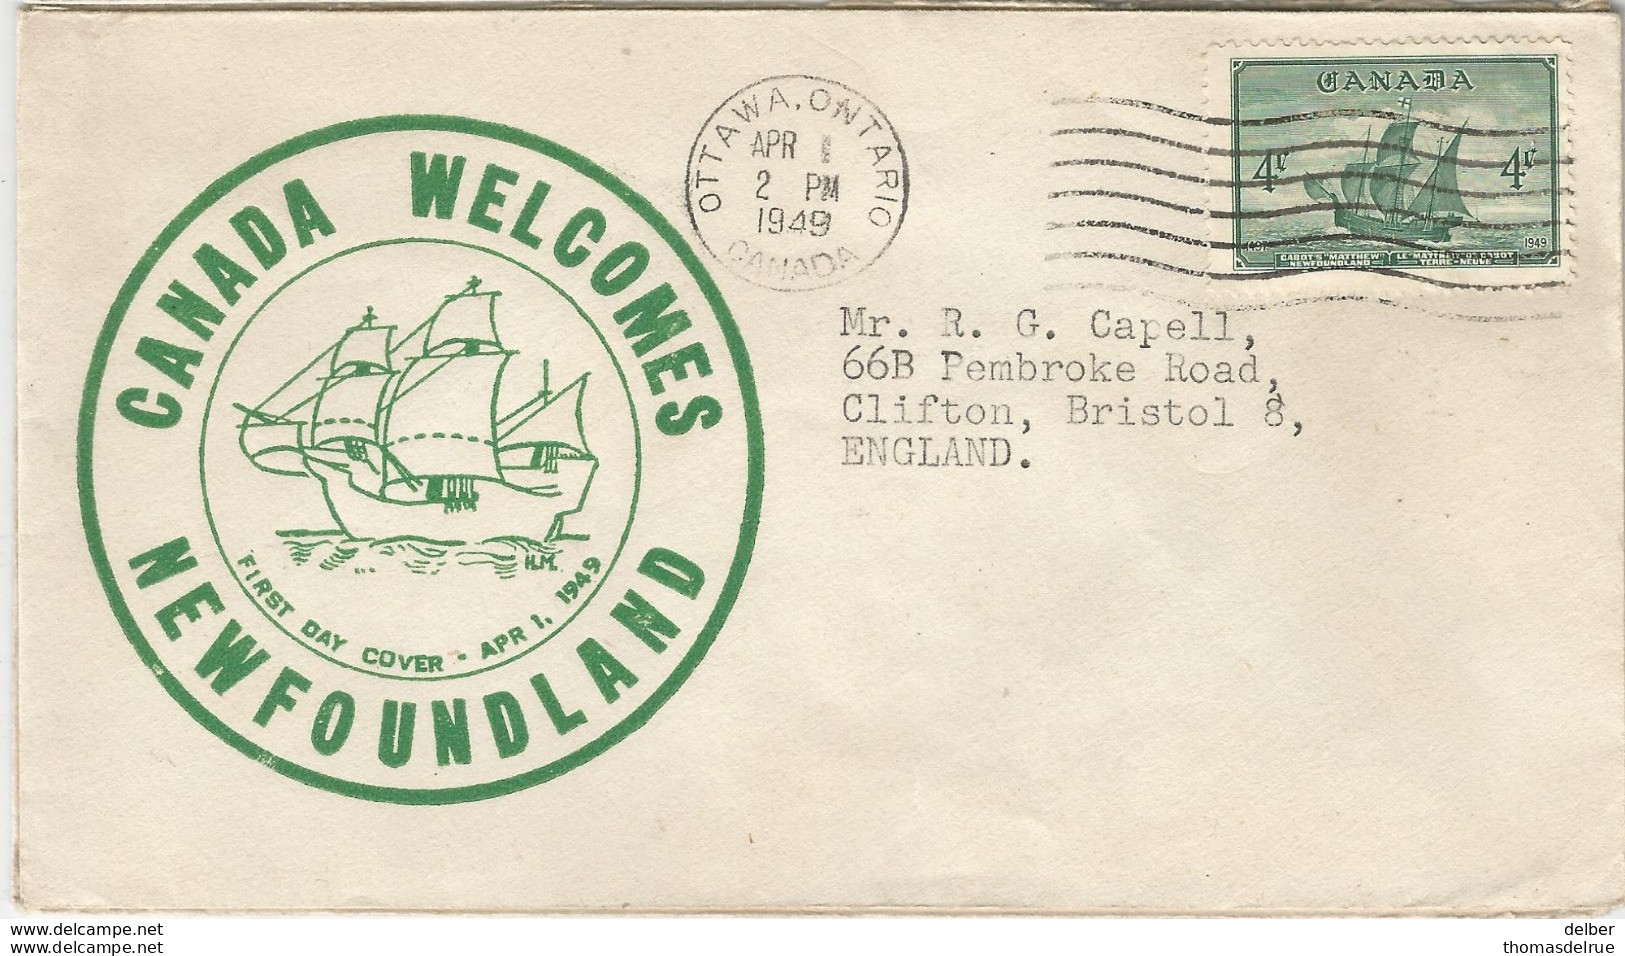 6Mm892: N° 282: CANADA WELCOMES NEWFOUNDLAND APR 1 1849 ... - ....-1951